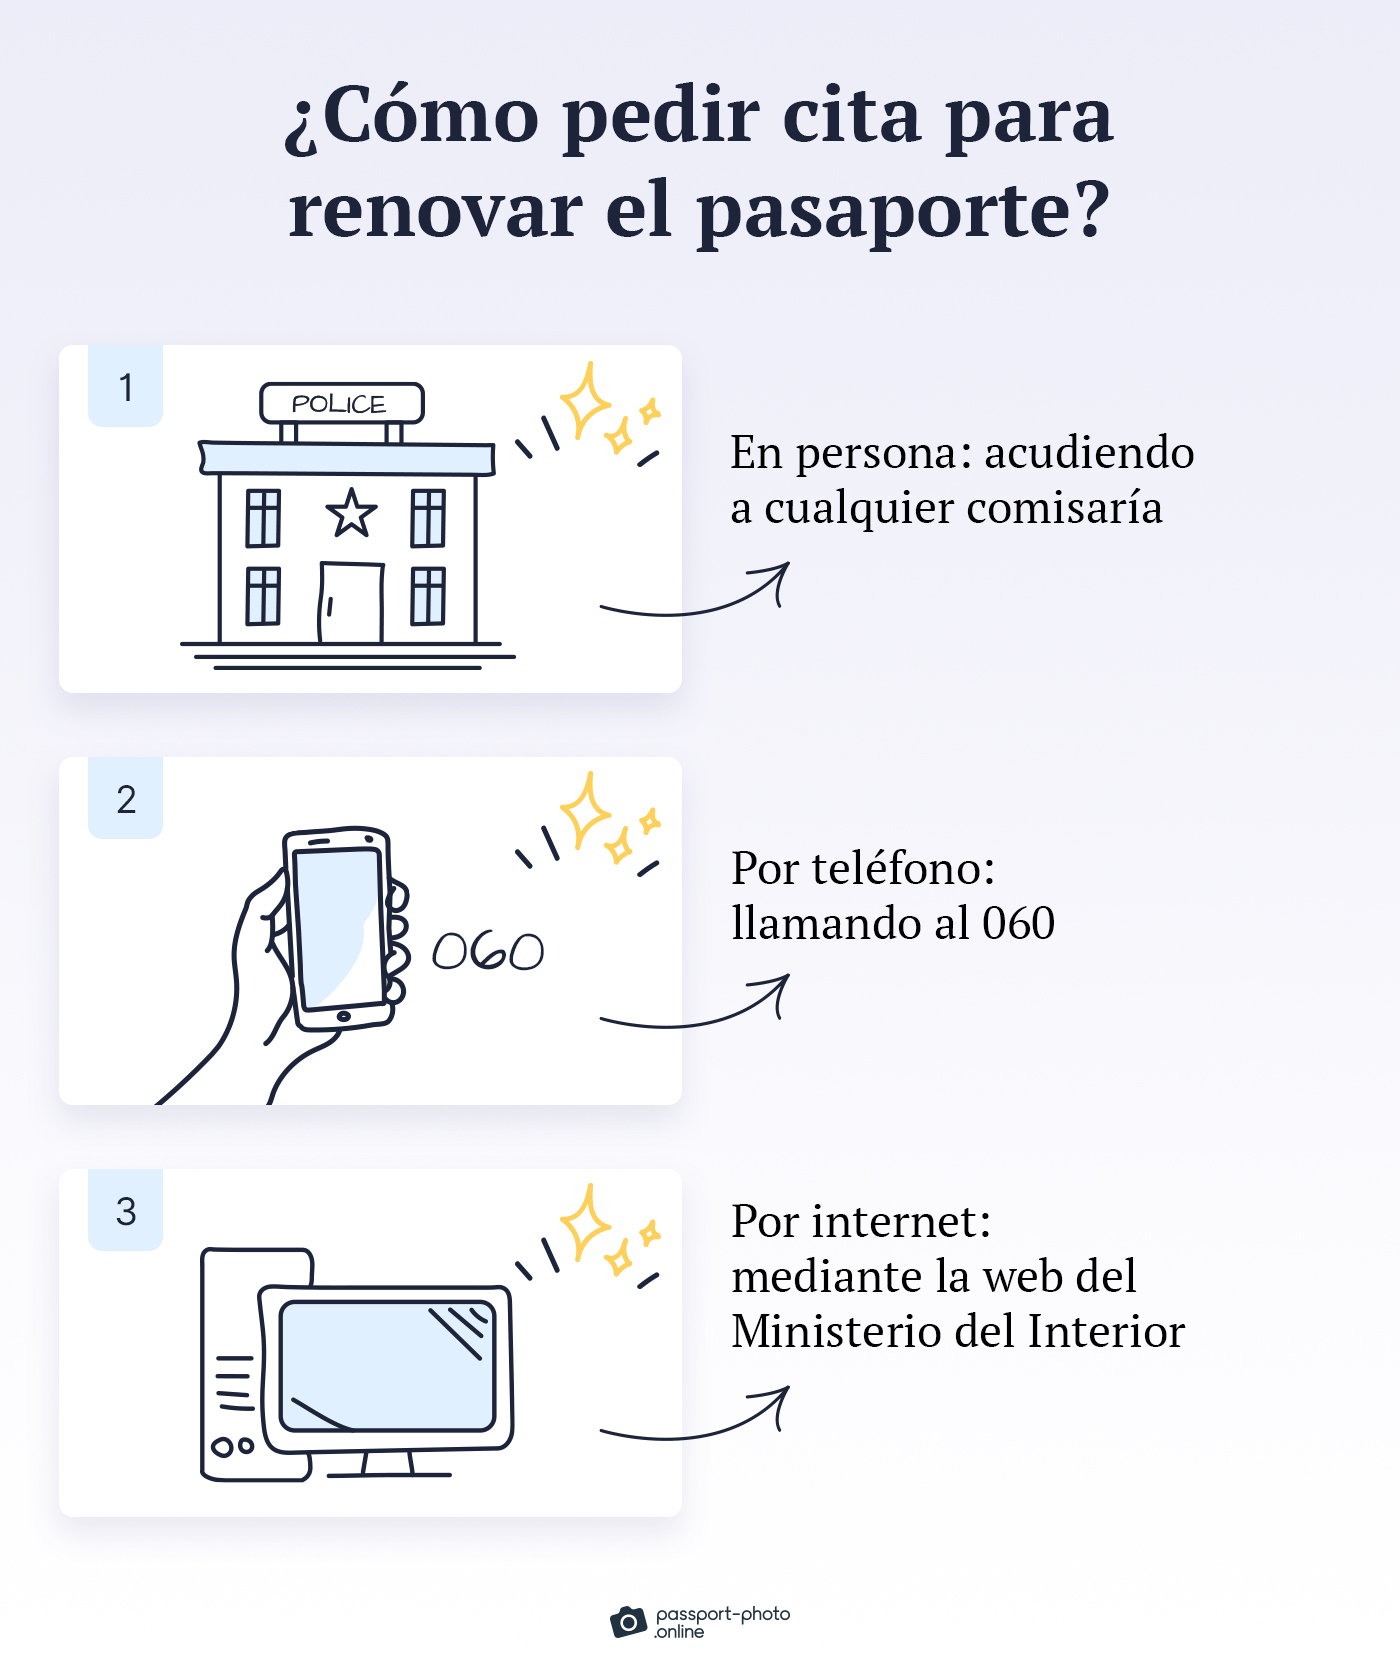 3 maneras de pedir cita para renovar el pasaporte español